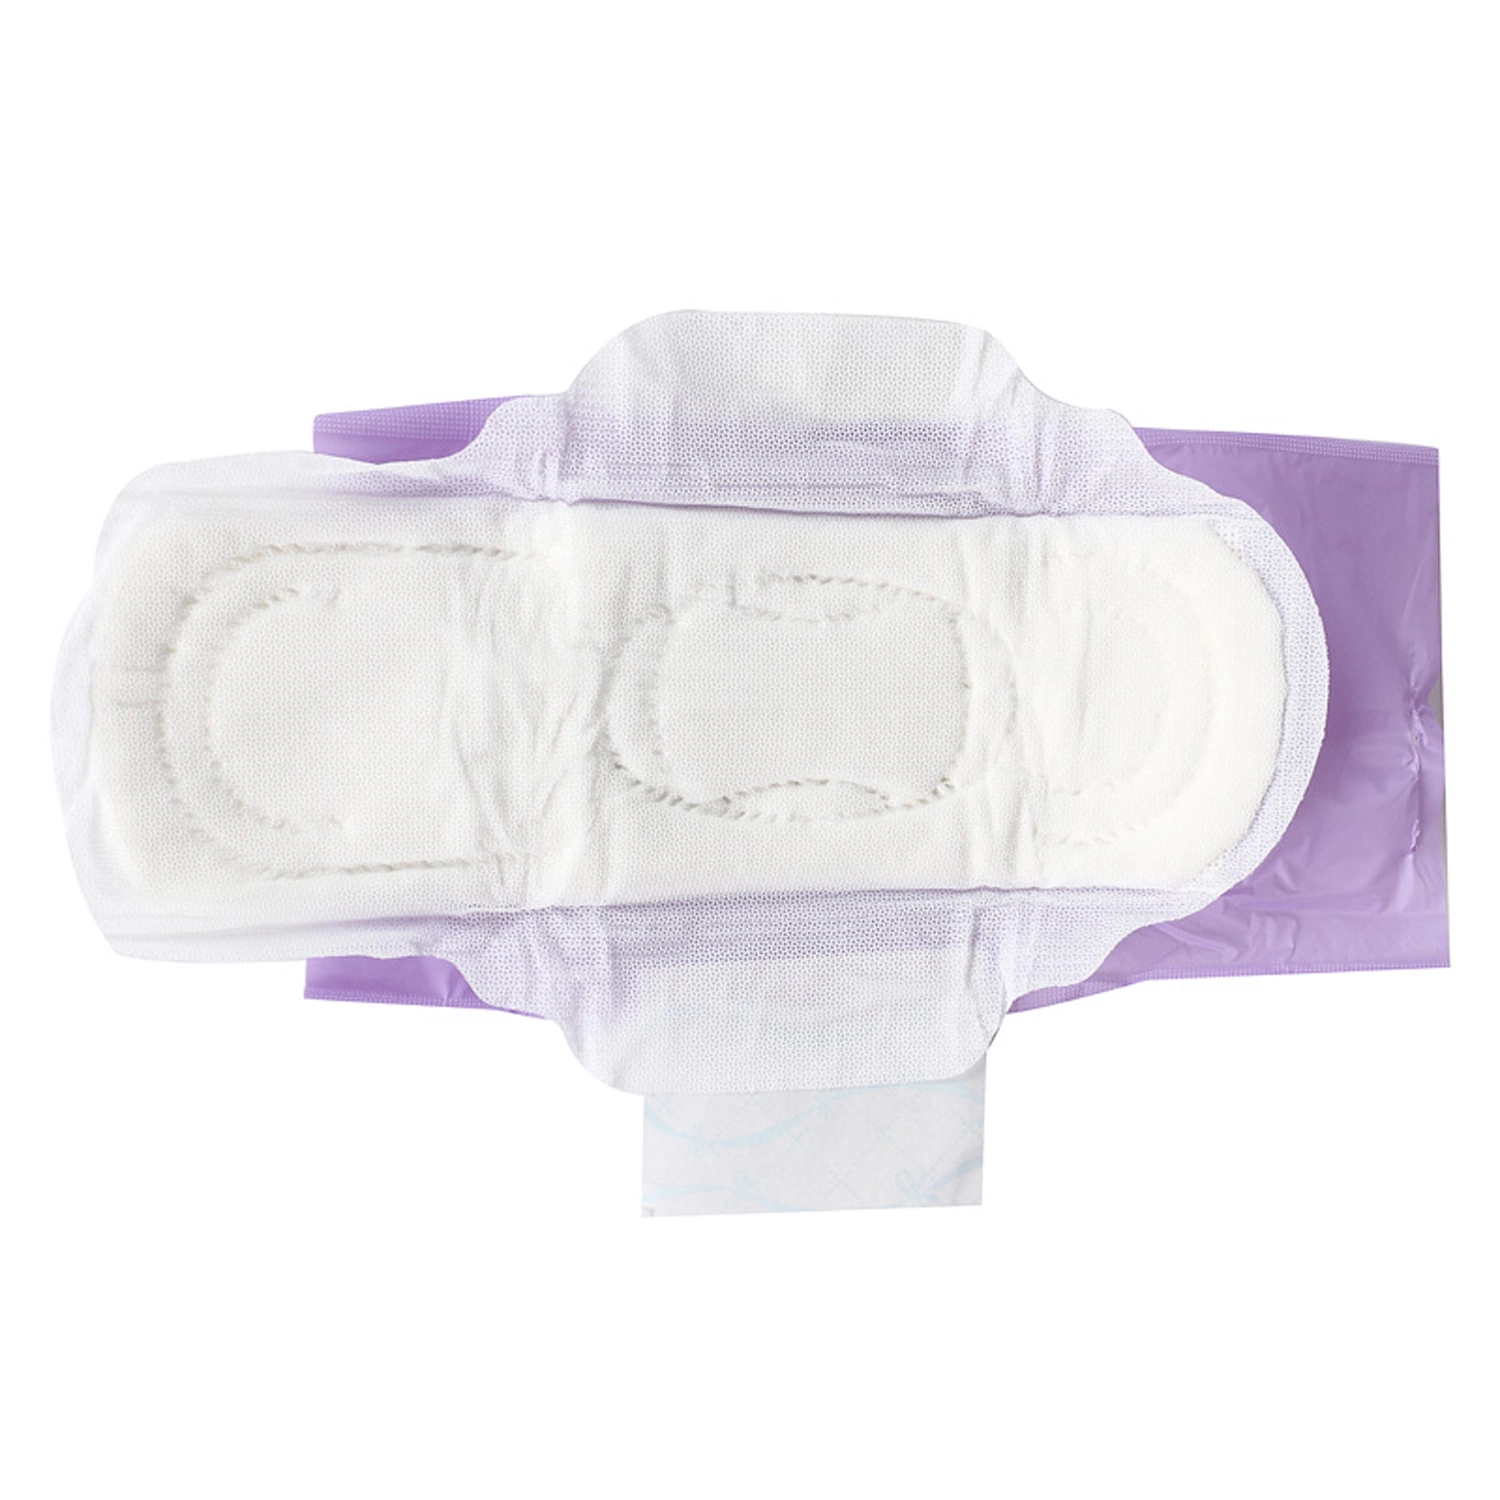 Marca OEM 280mm Dama regular el uso externo perfumada toalla sanitaria de productos de cuidado con la piel.